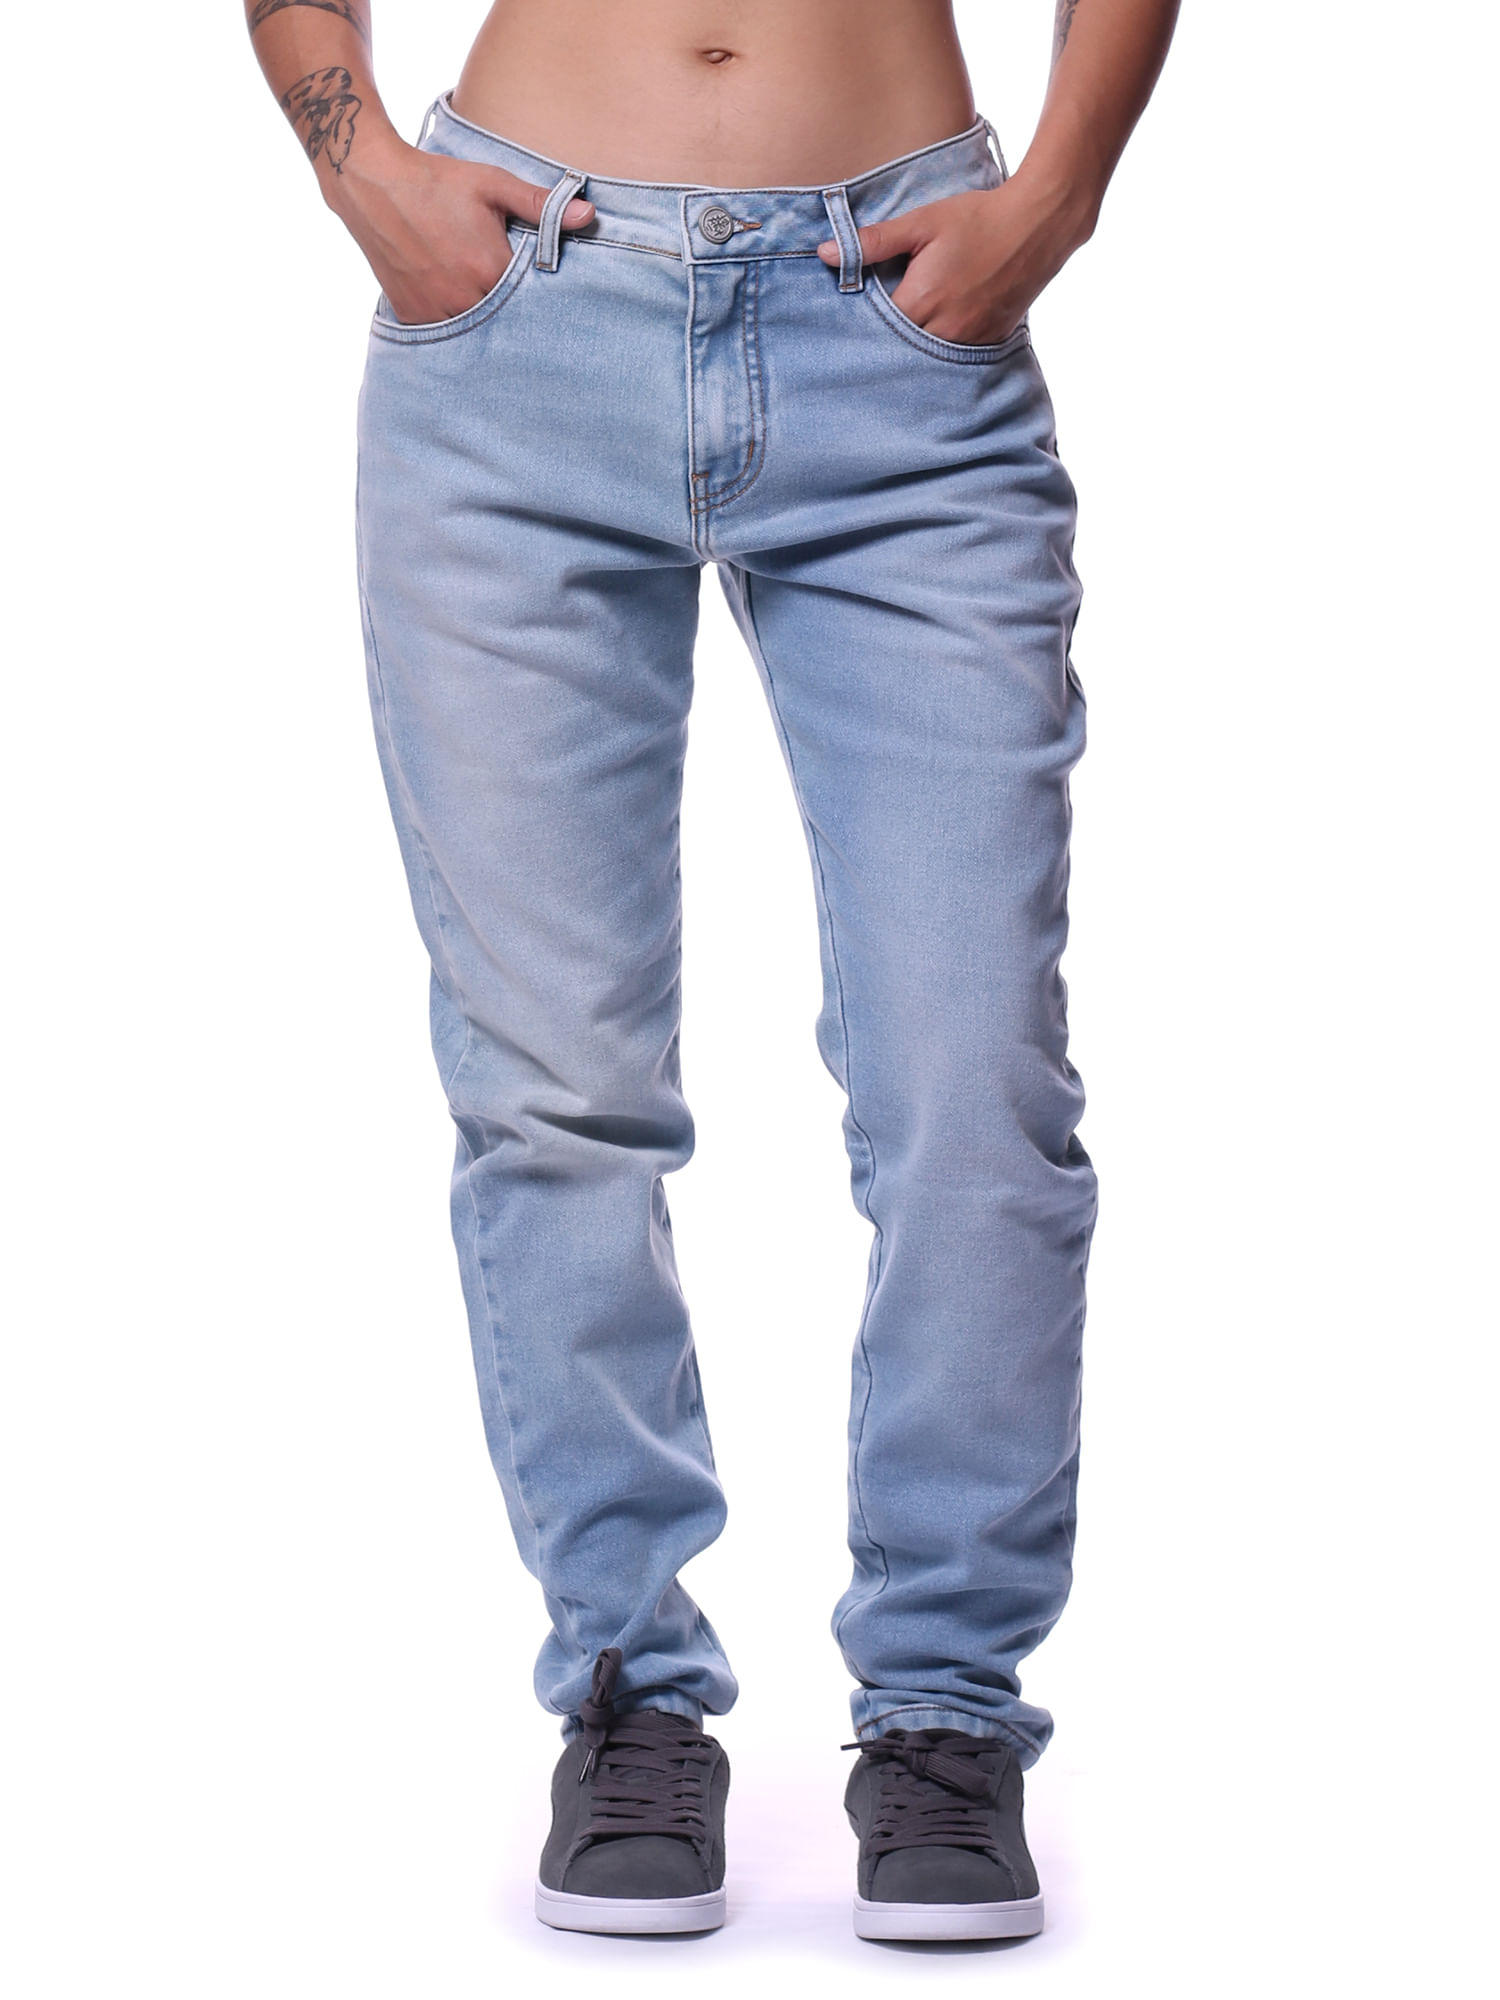 Calca-bali-hai-jeans-skinny-Jeans-claro